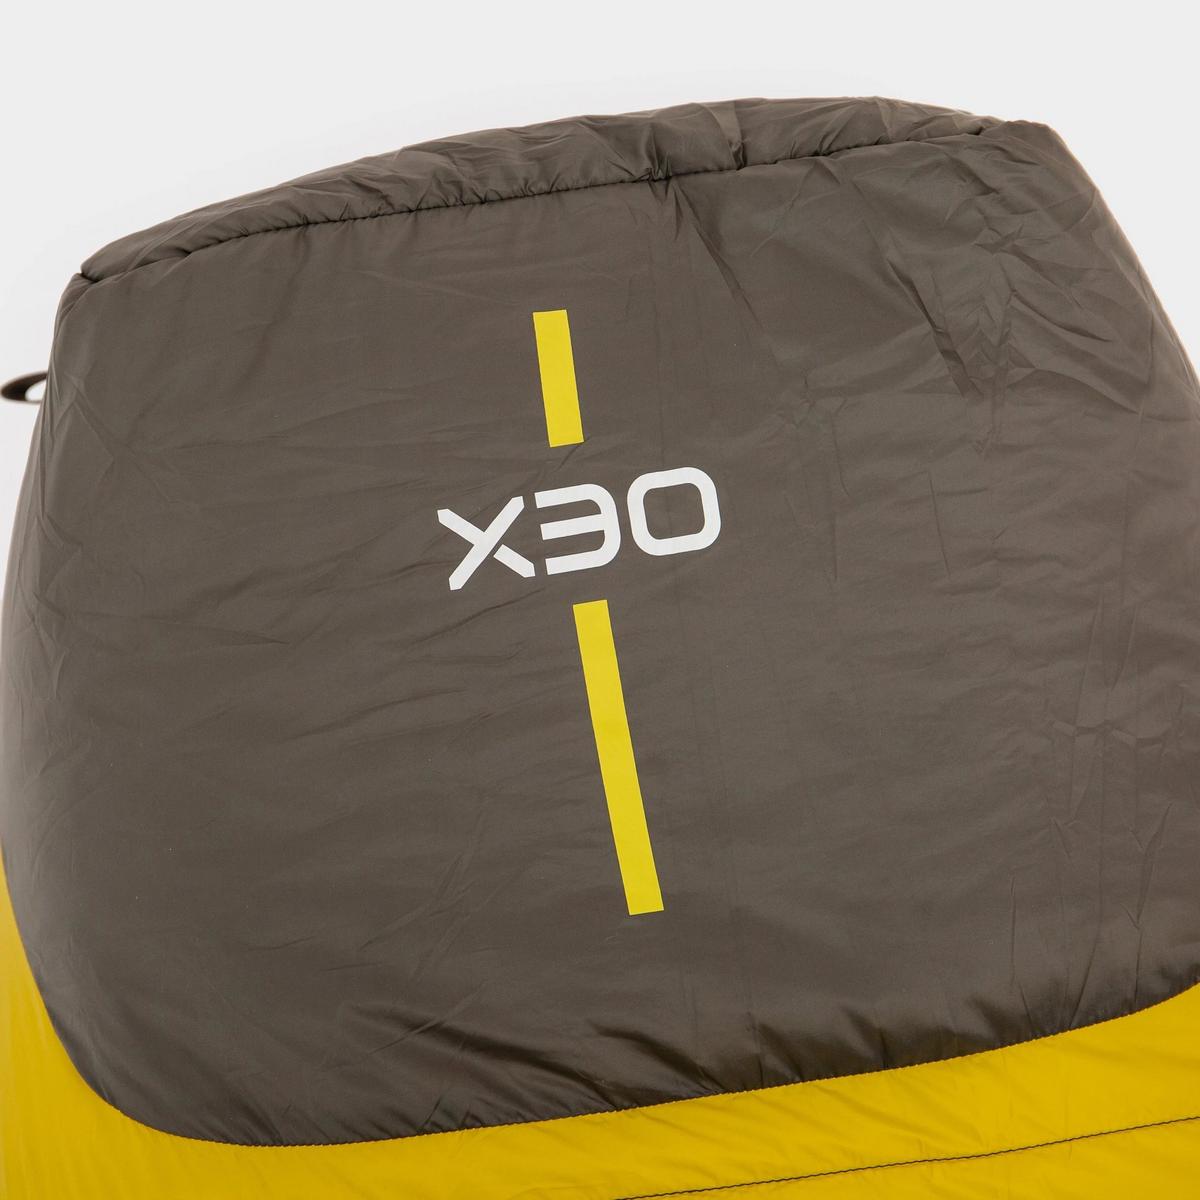  OEX Fathom EV 300 Sleeping Bag - Yellow